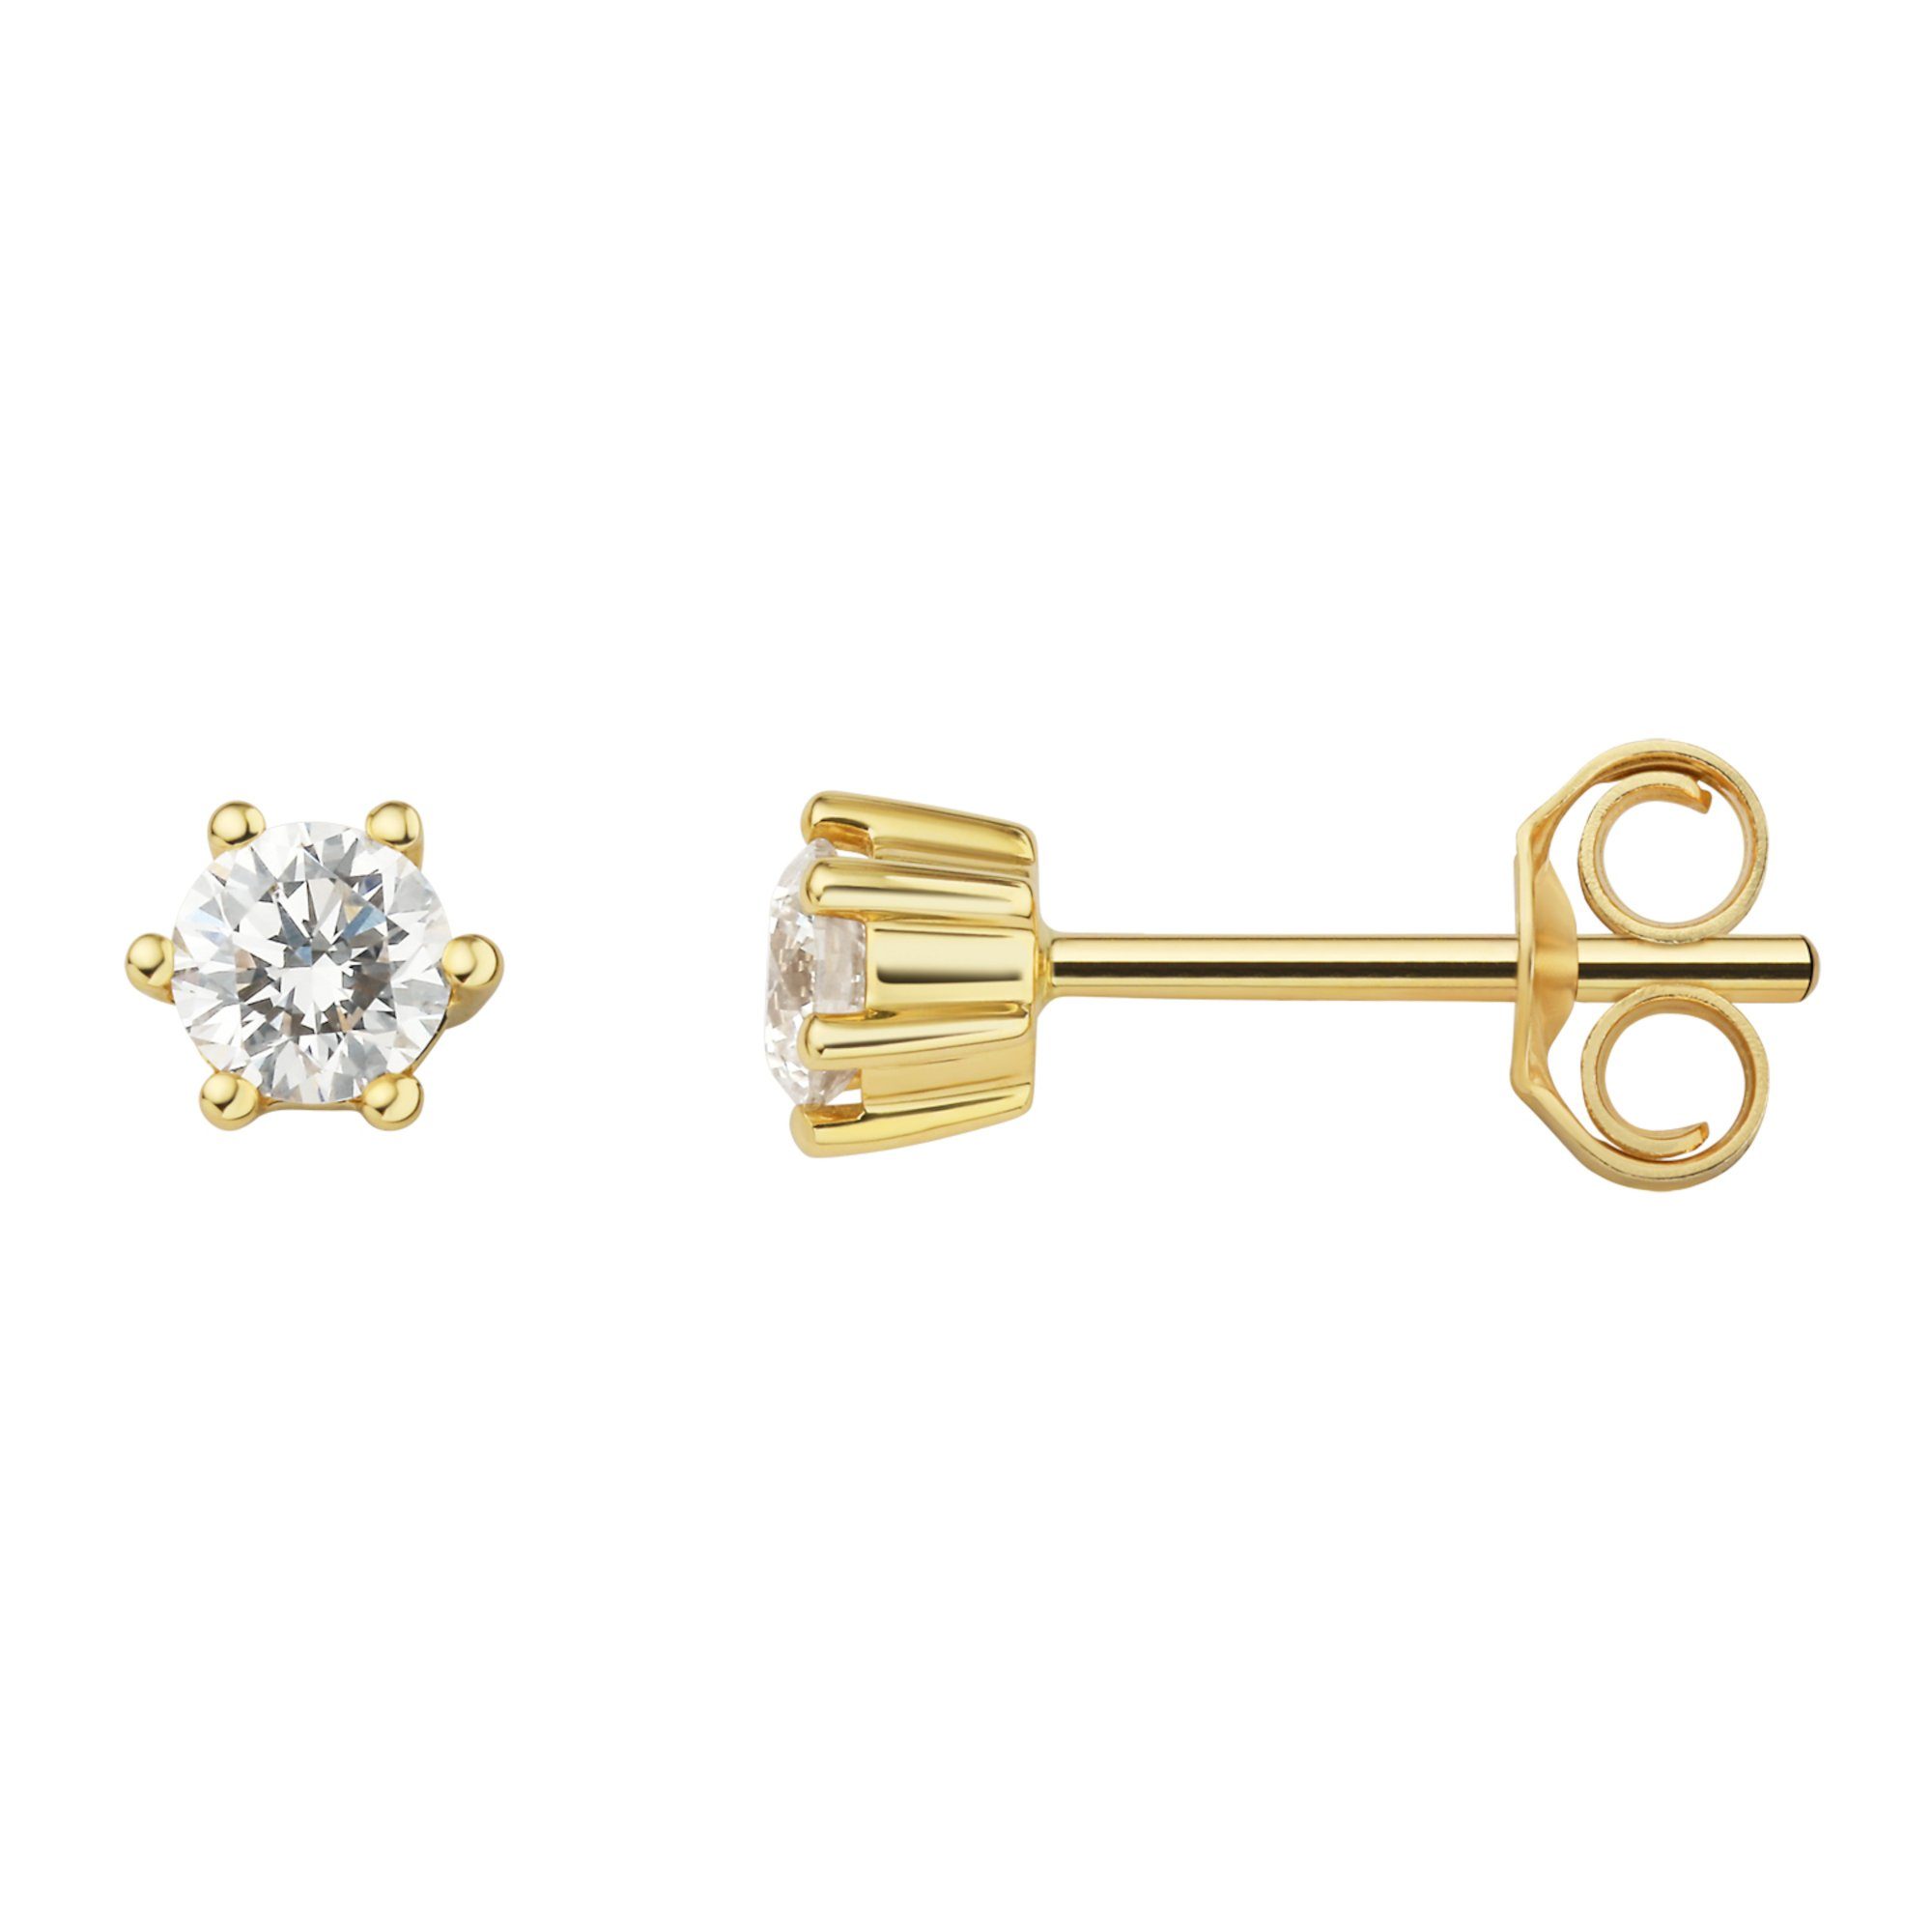 ONE ELEMENT Paar Ohrstecker 0.3 ct Diamant Brillant Ohrringe Ohrstecker aus 750 Gelbgold, Damen Gold Schmuck